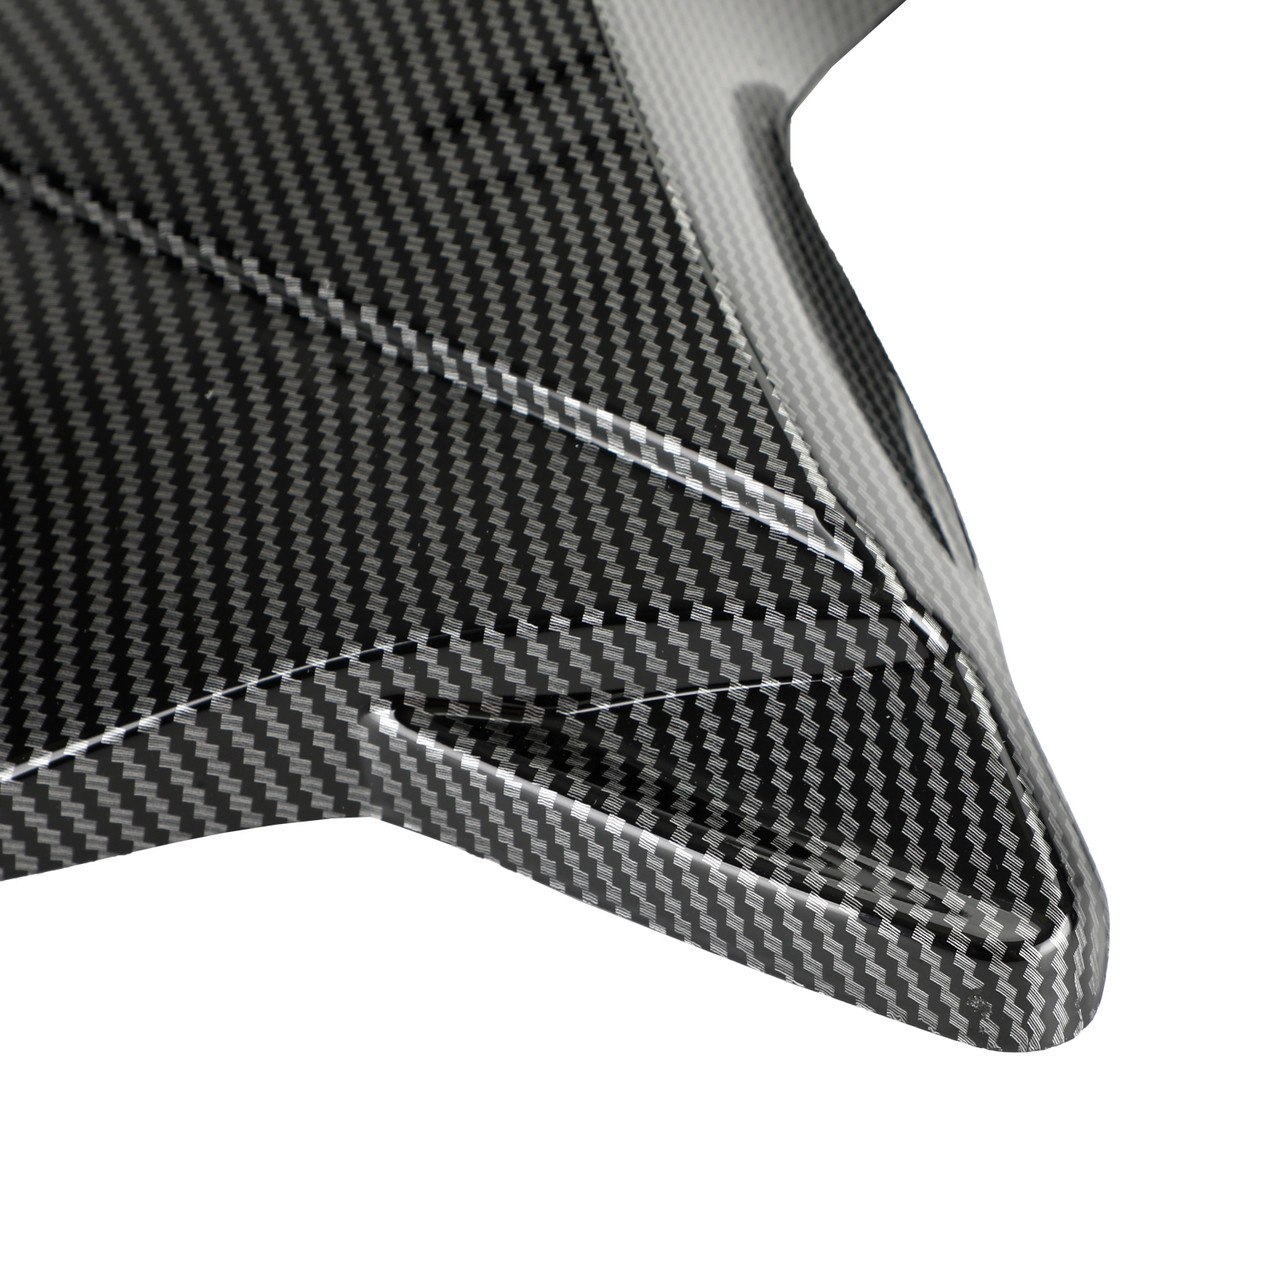 Rear Tail Seat Fairing Cowl Cover for Honda CB650R CBR650R 2021-2022 Carbon